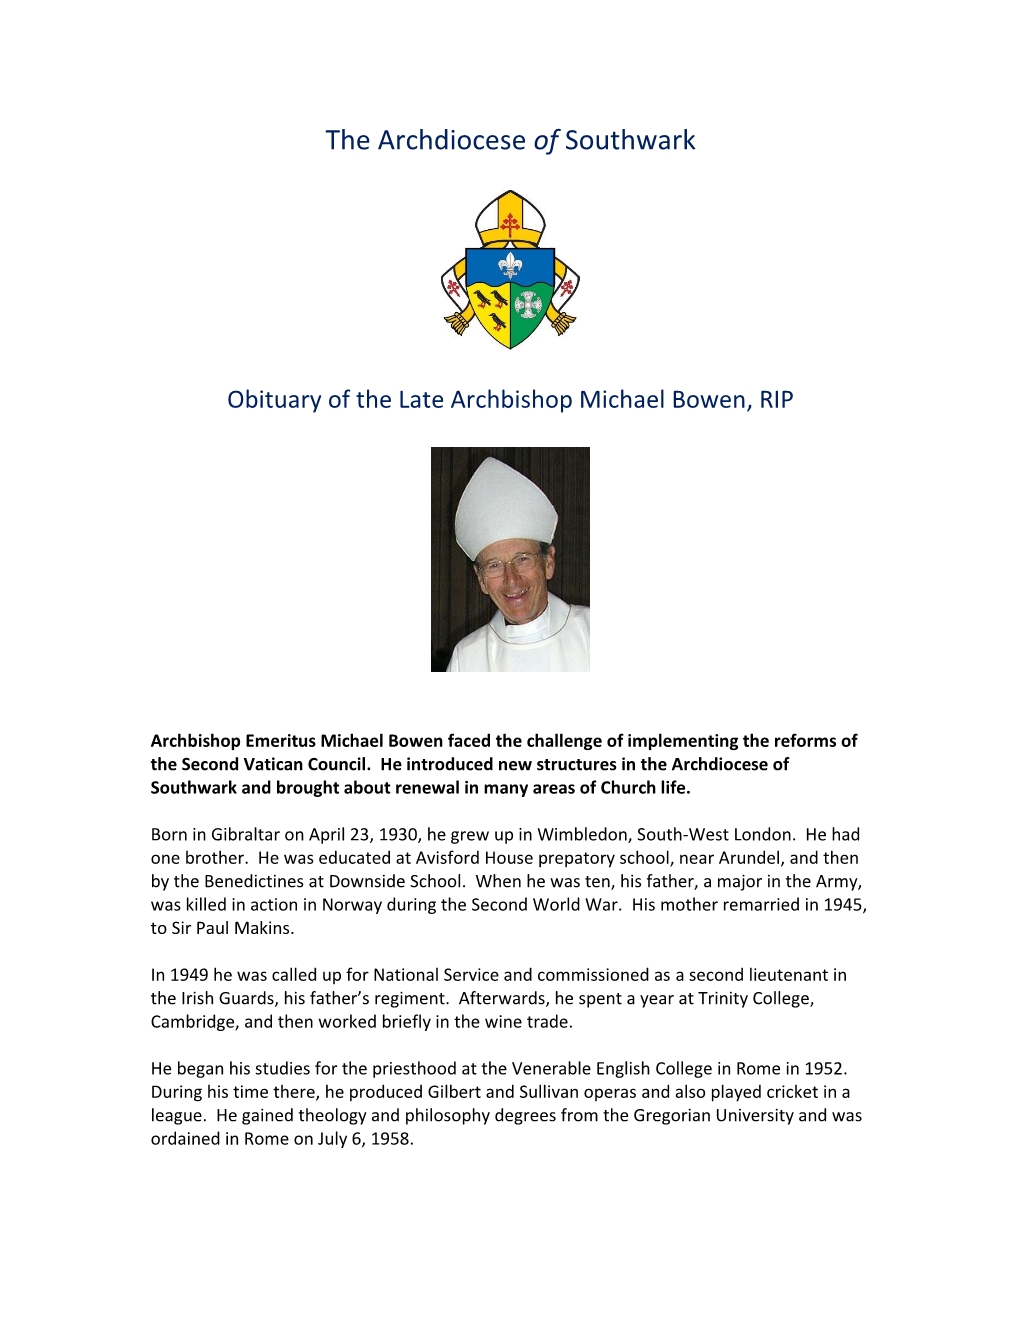 The Late Archbishop Michael Bowen: Obituary